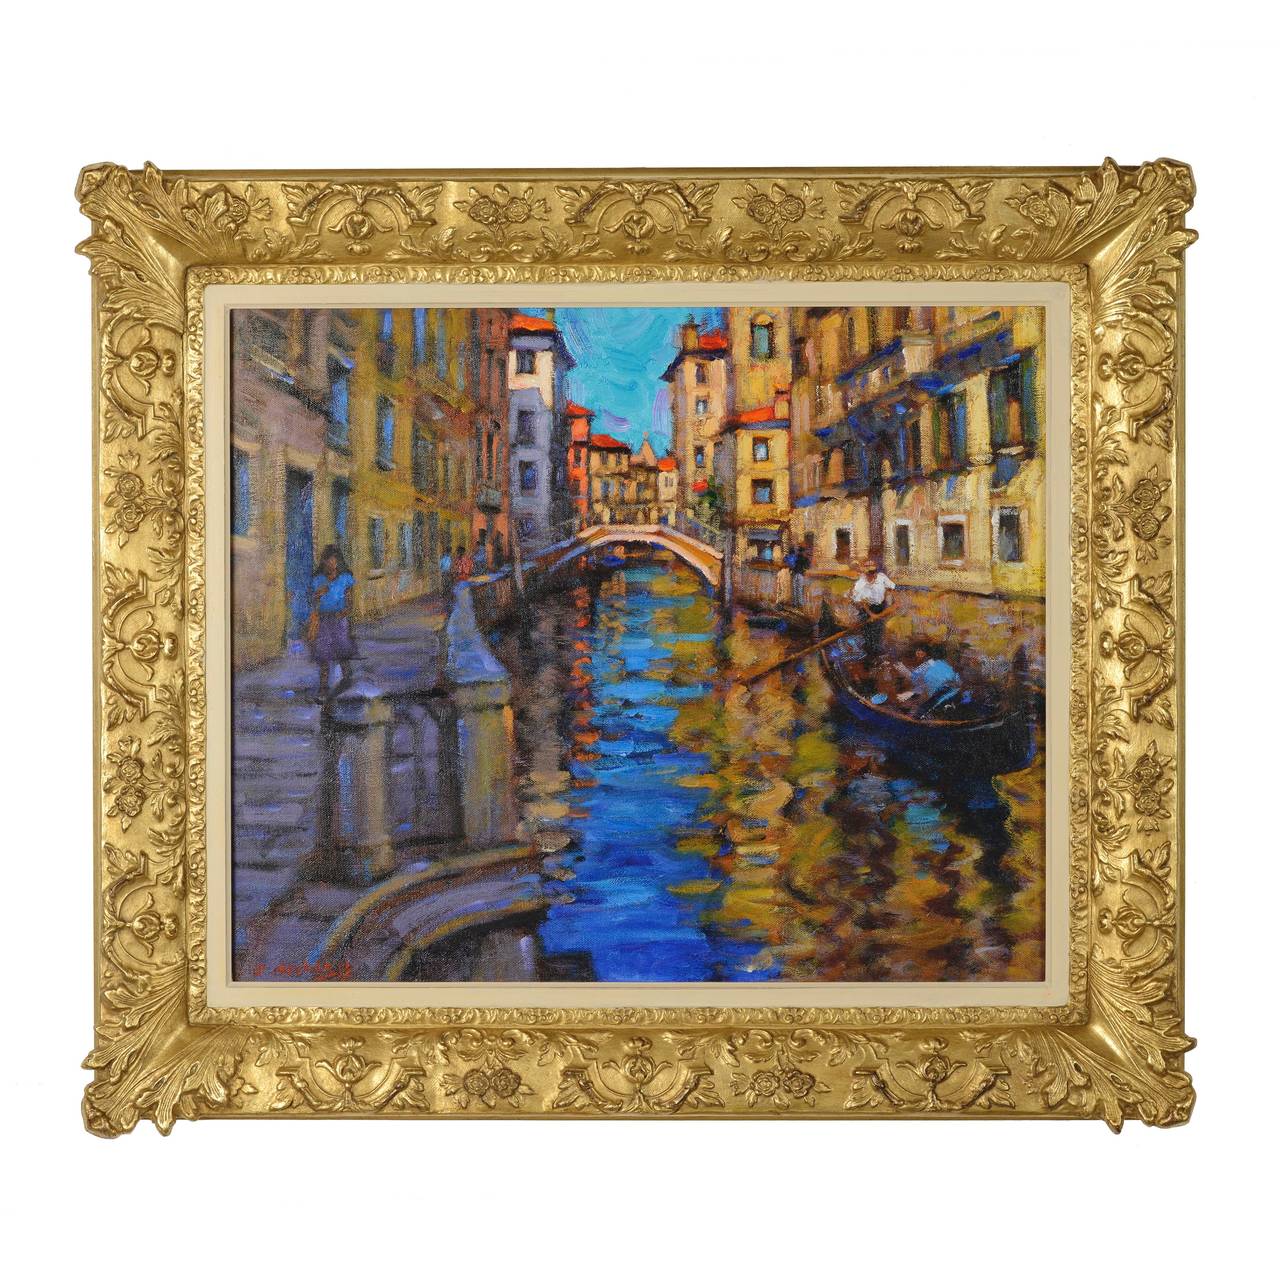 “A Venetian Backwater” - Painting by John Mackie (b.1955)